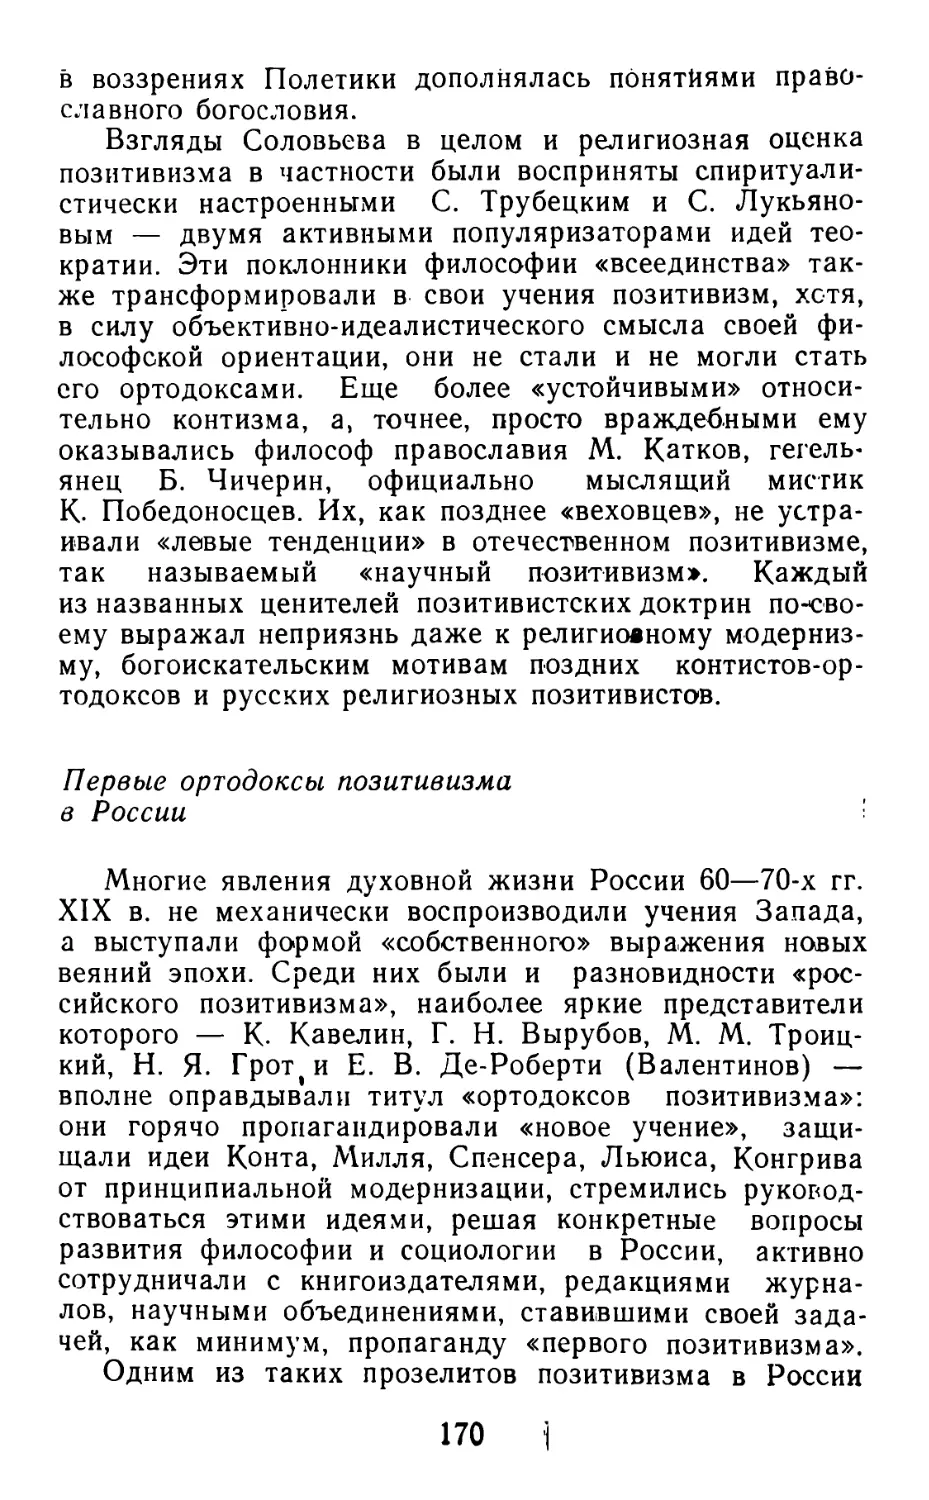 Первые ортодоксы позитивизма в России